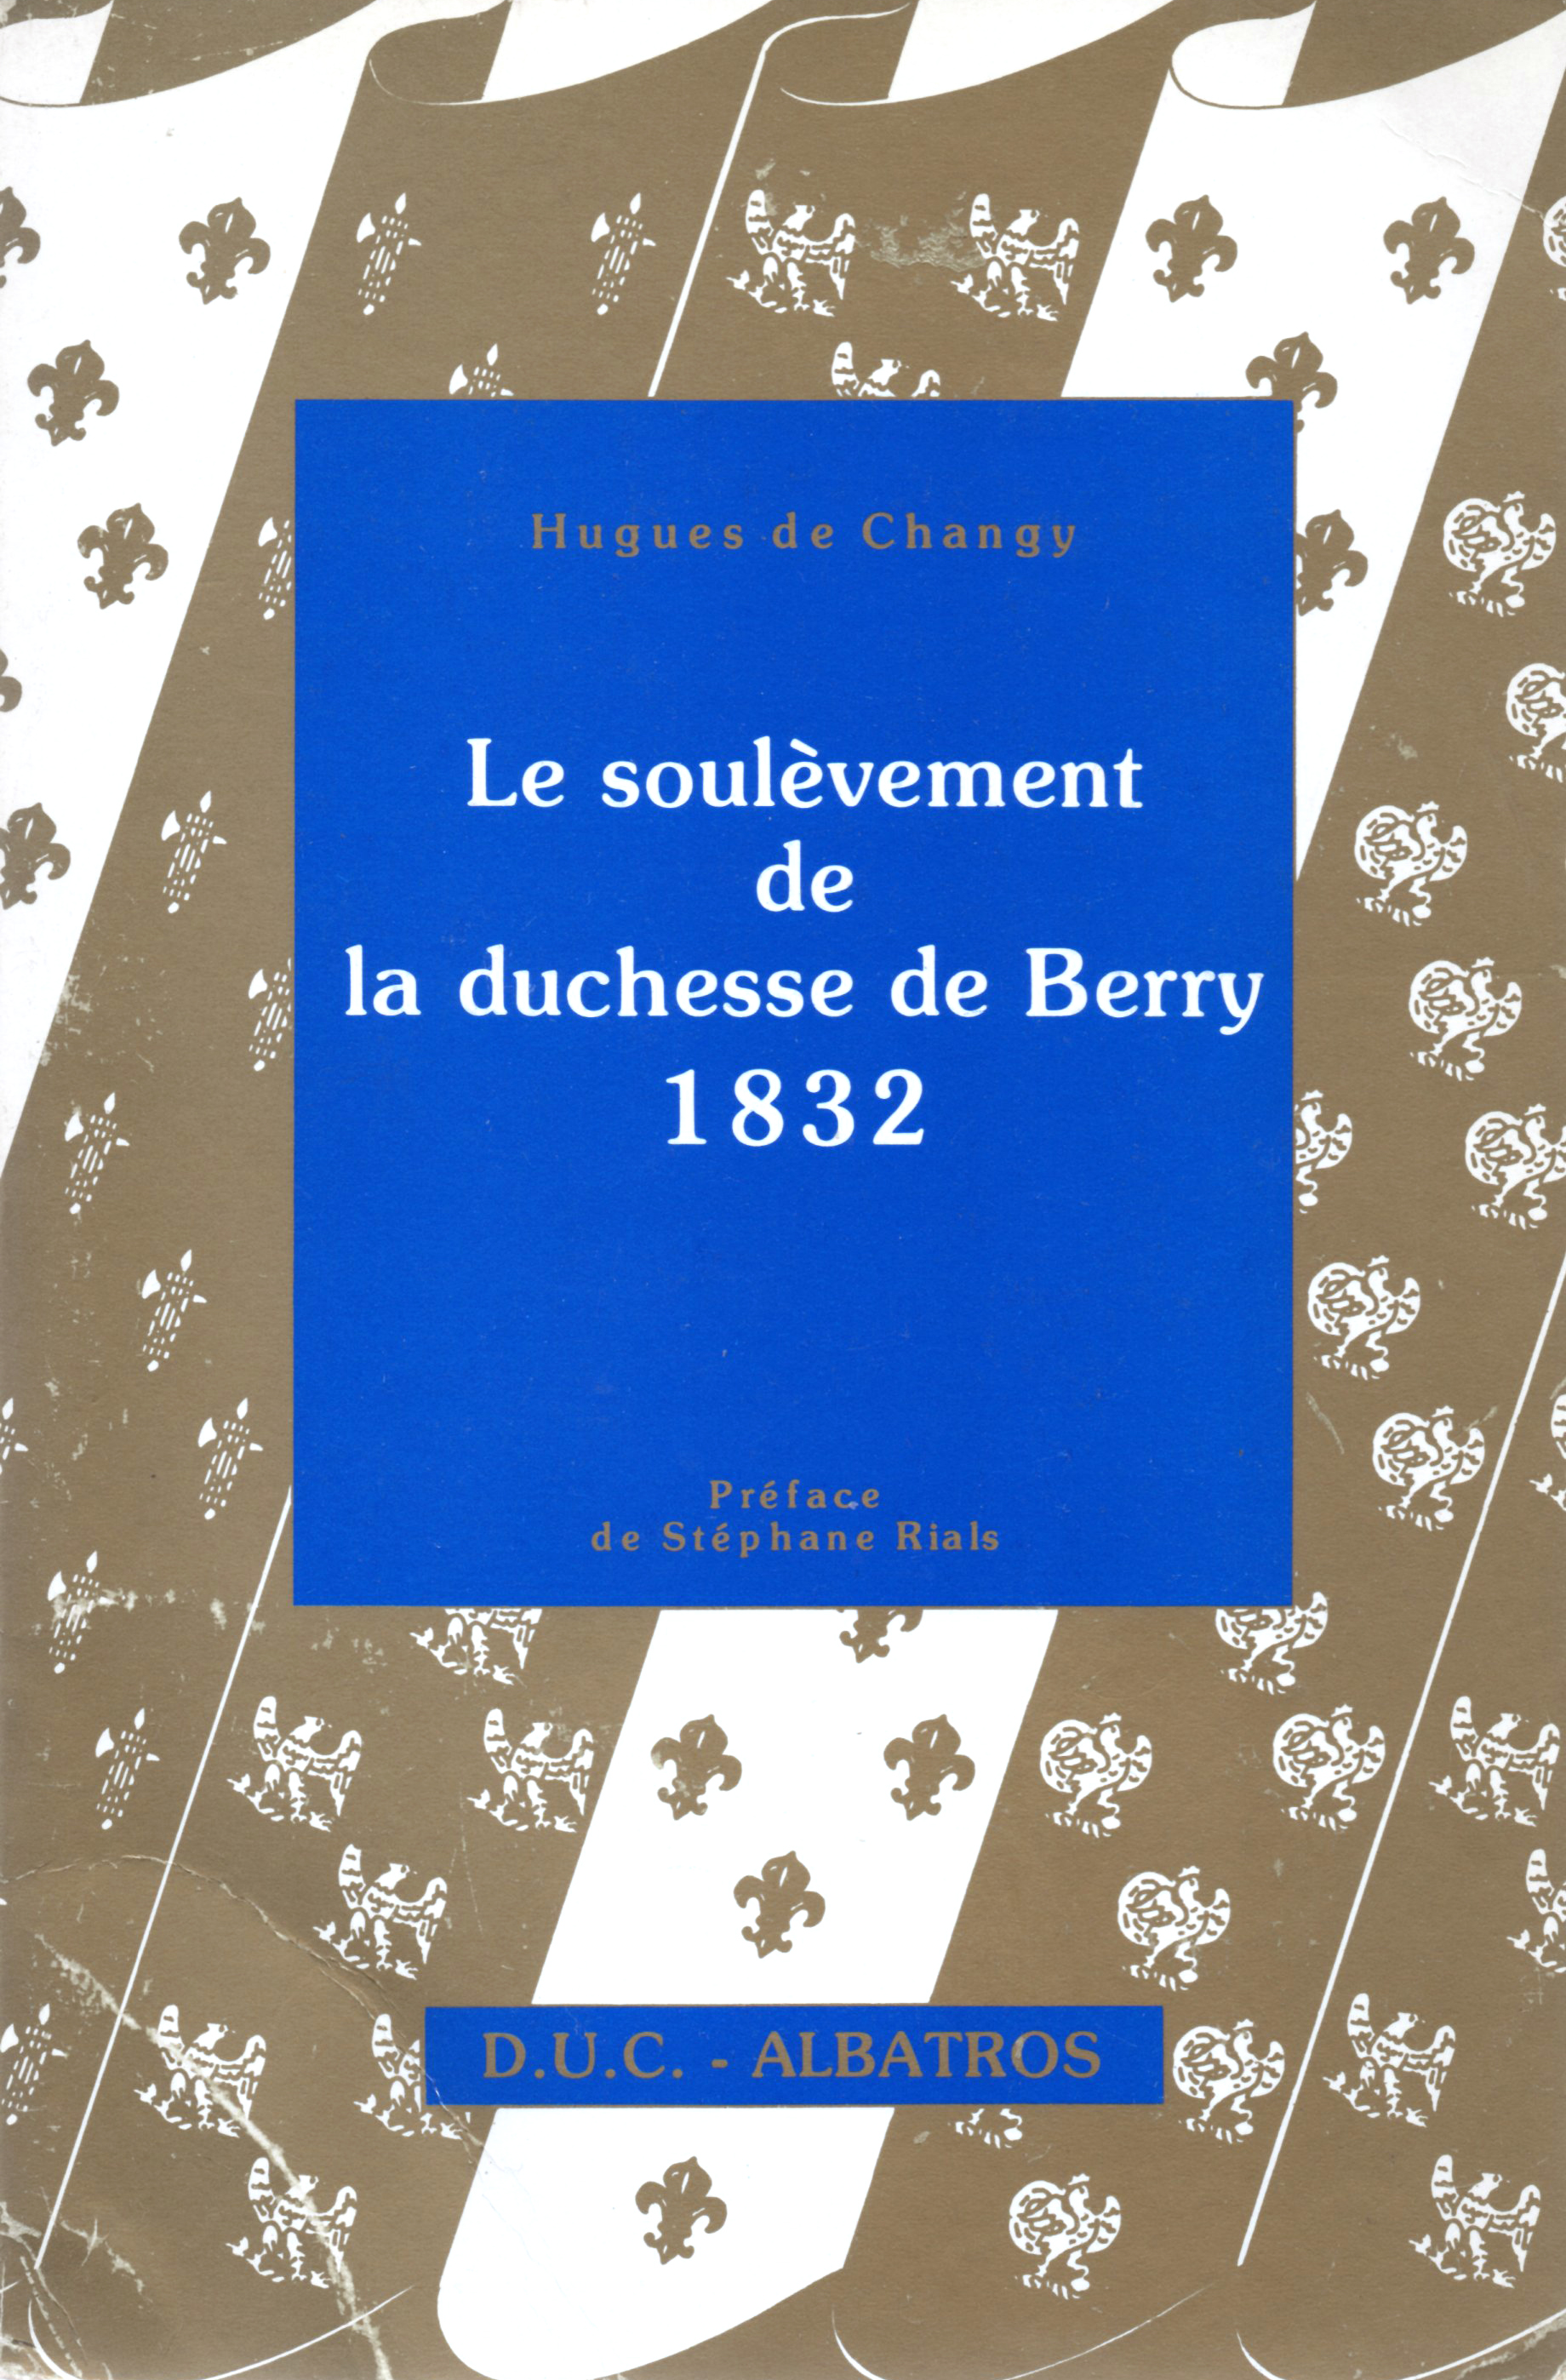 [JEU]Suite de nombres - Page 30 Soulevement-duchesse-de-berry